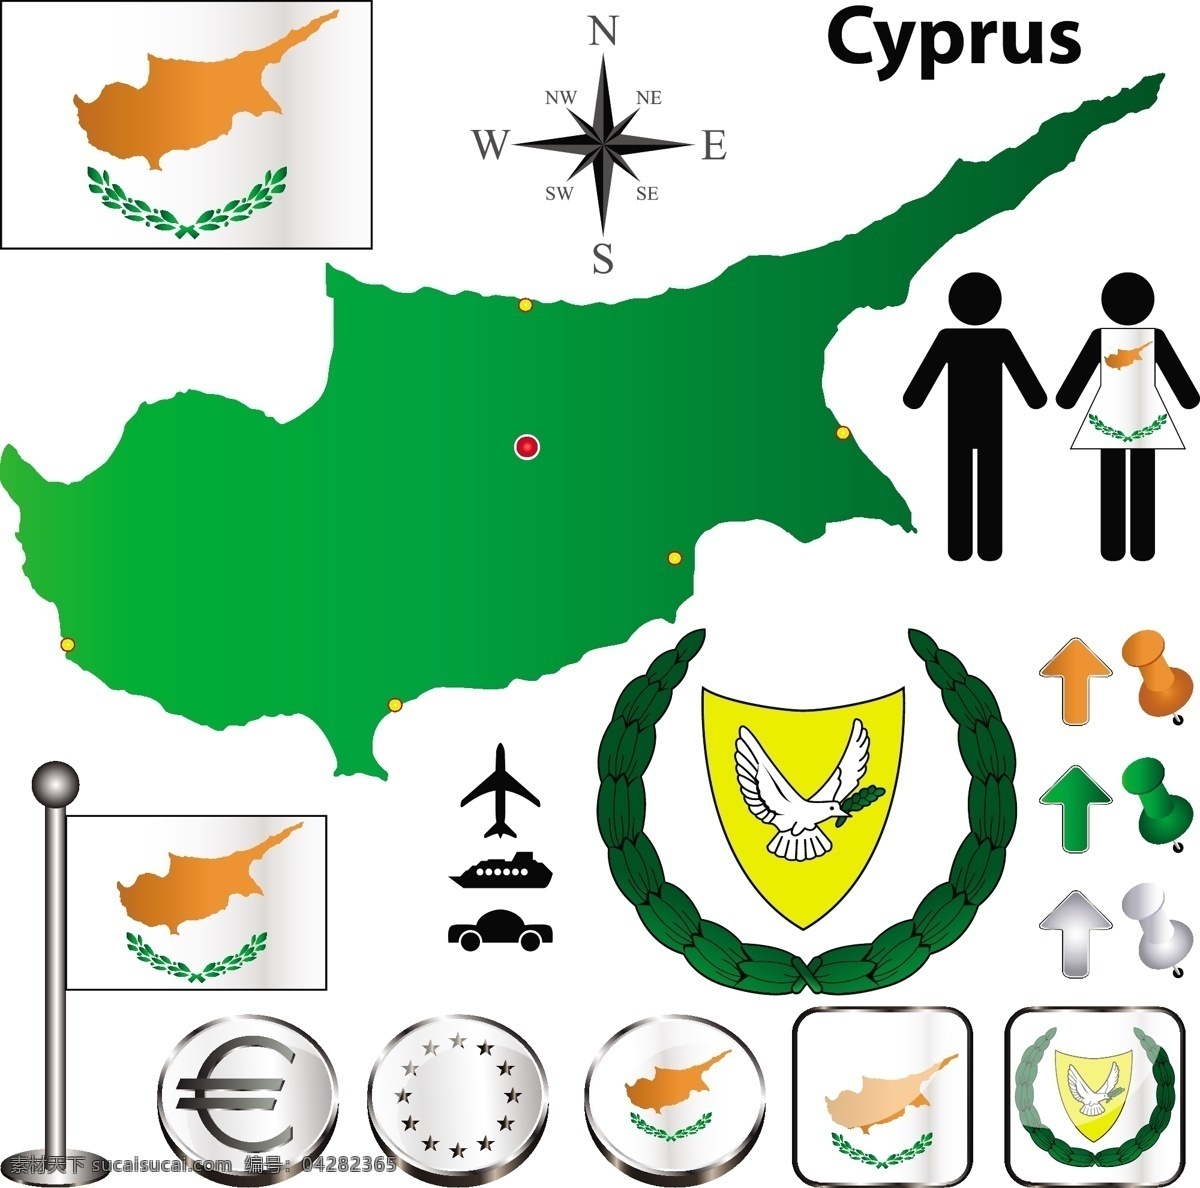 塞浦路斯国旗 地图 国旗图标 立体按钮 图钉 空间环境 矢量素材 白色